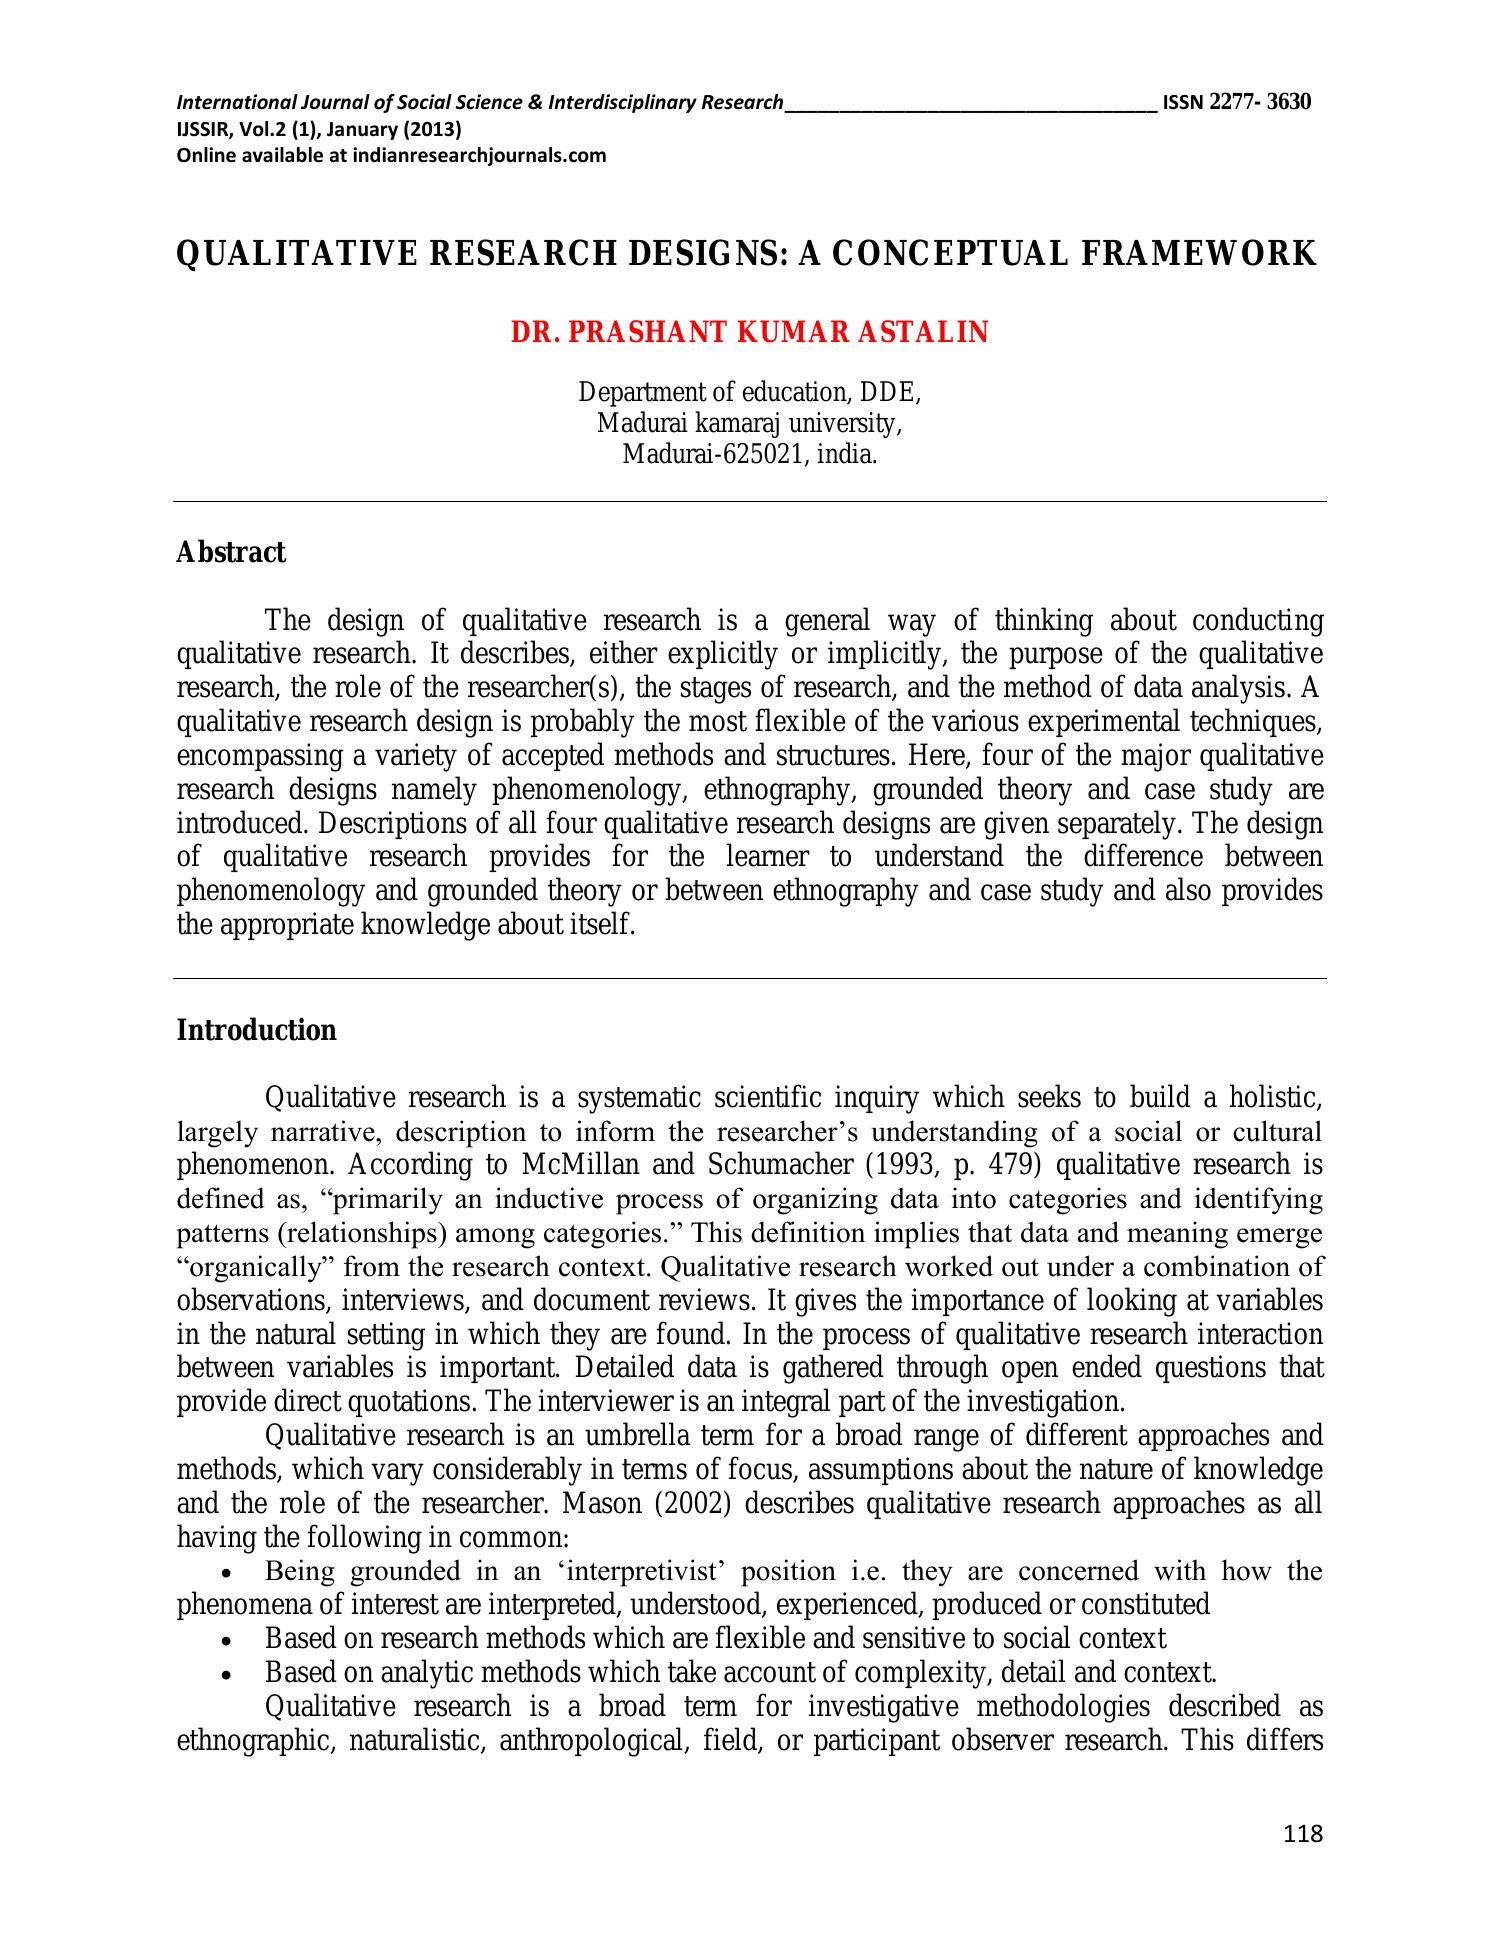 qualitative research design pdf 2020